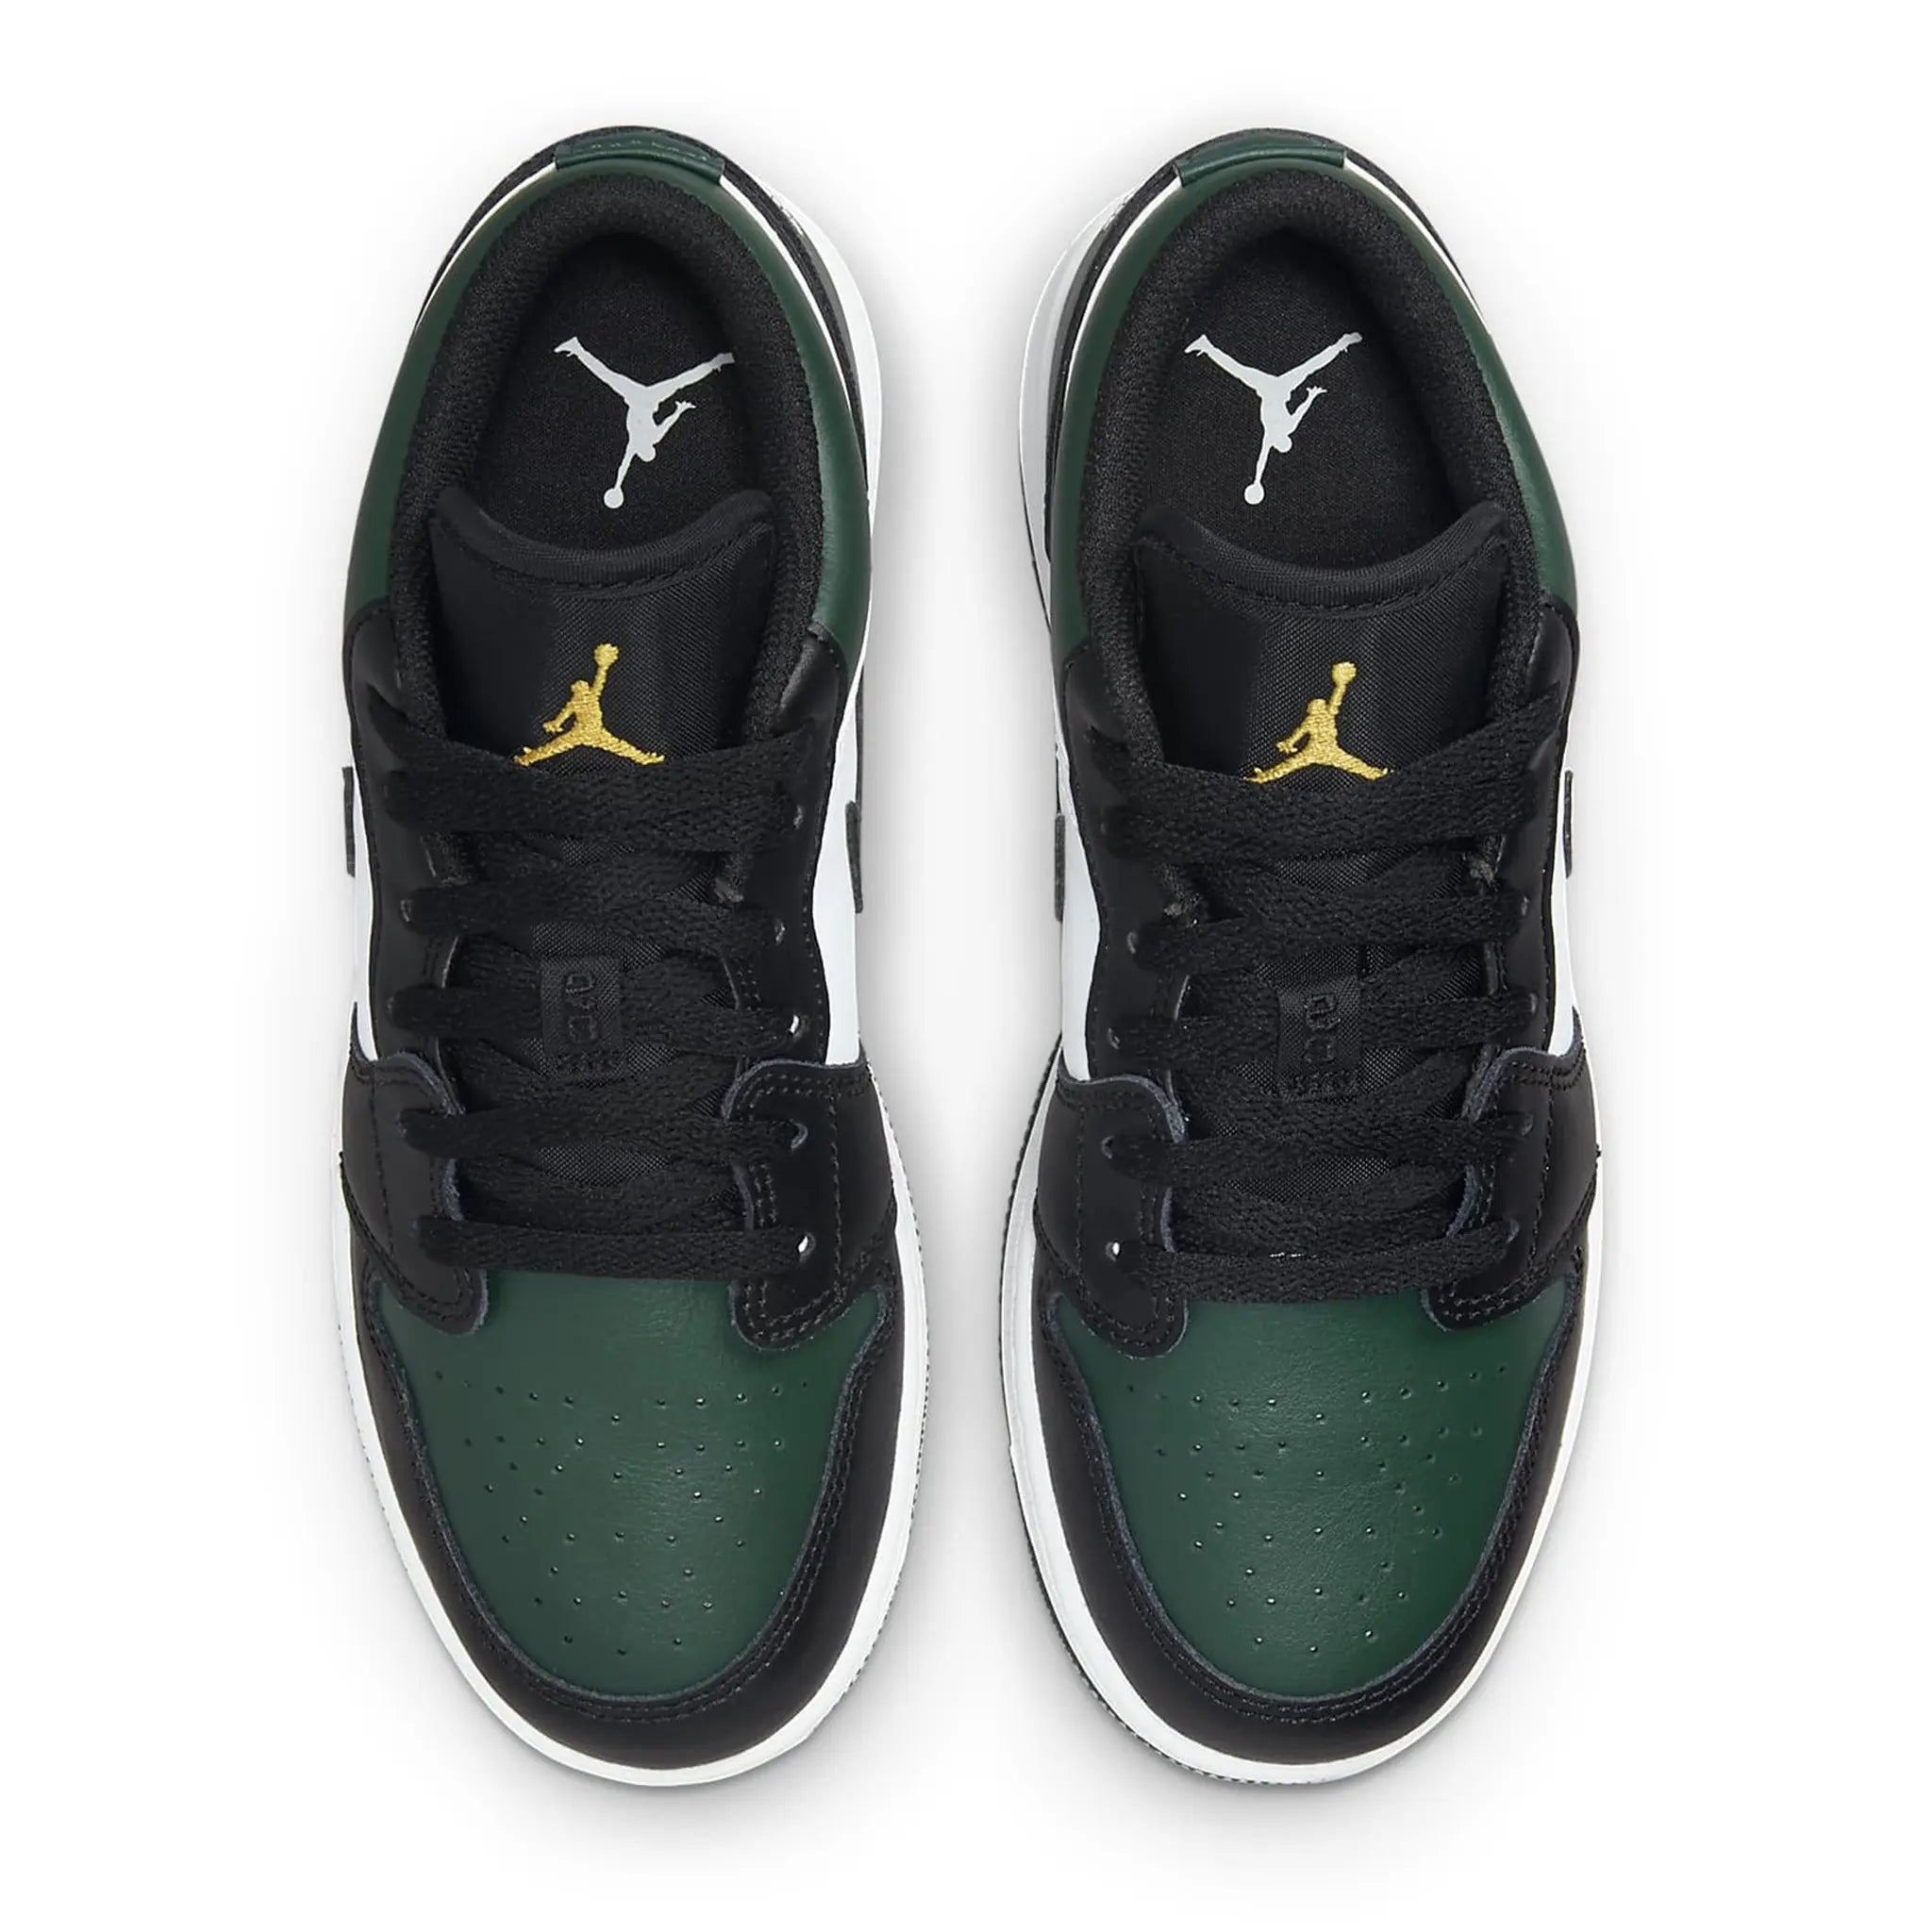 Air Jordan 1 Low Green Toe (GS)